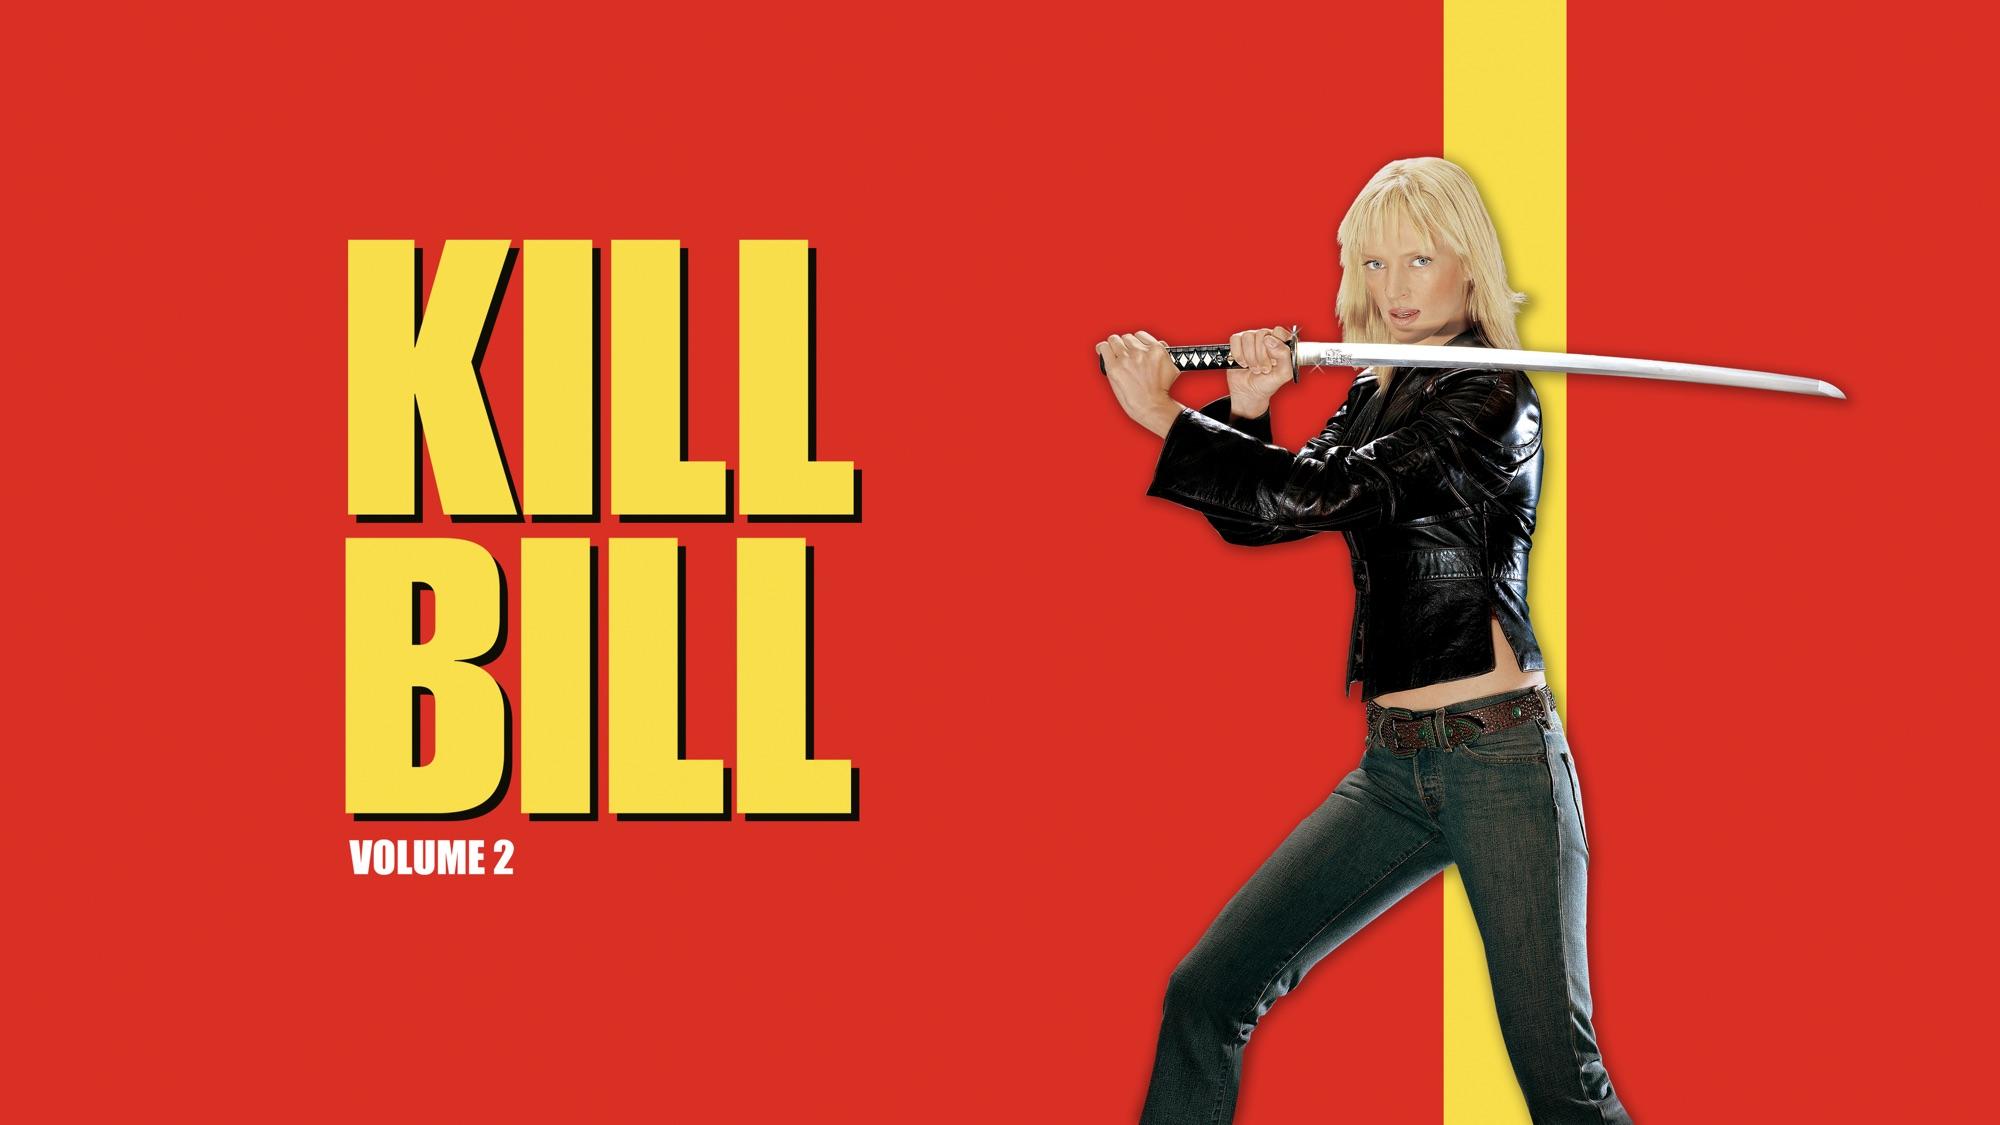 HD kill bill vol 1 wallpapers  Peakpx